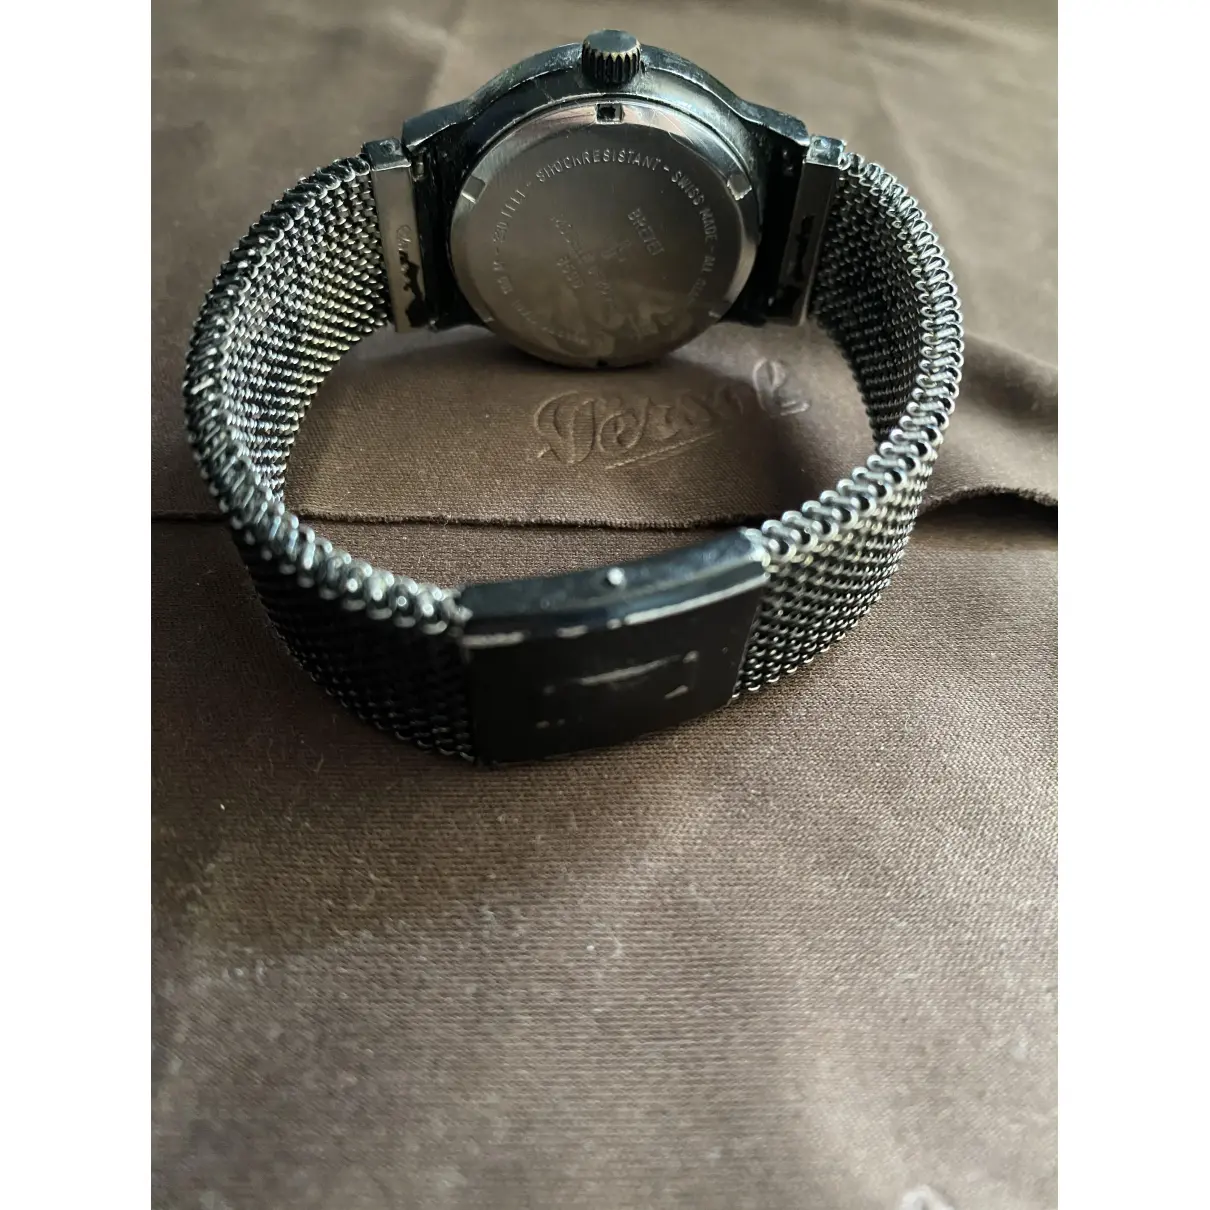 Buy Breitling Watch online - Vintage